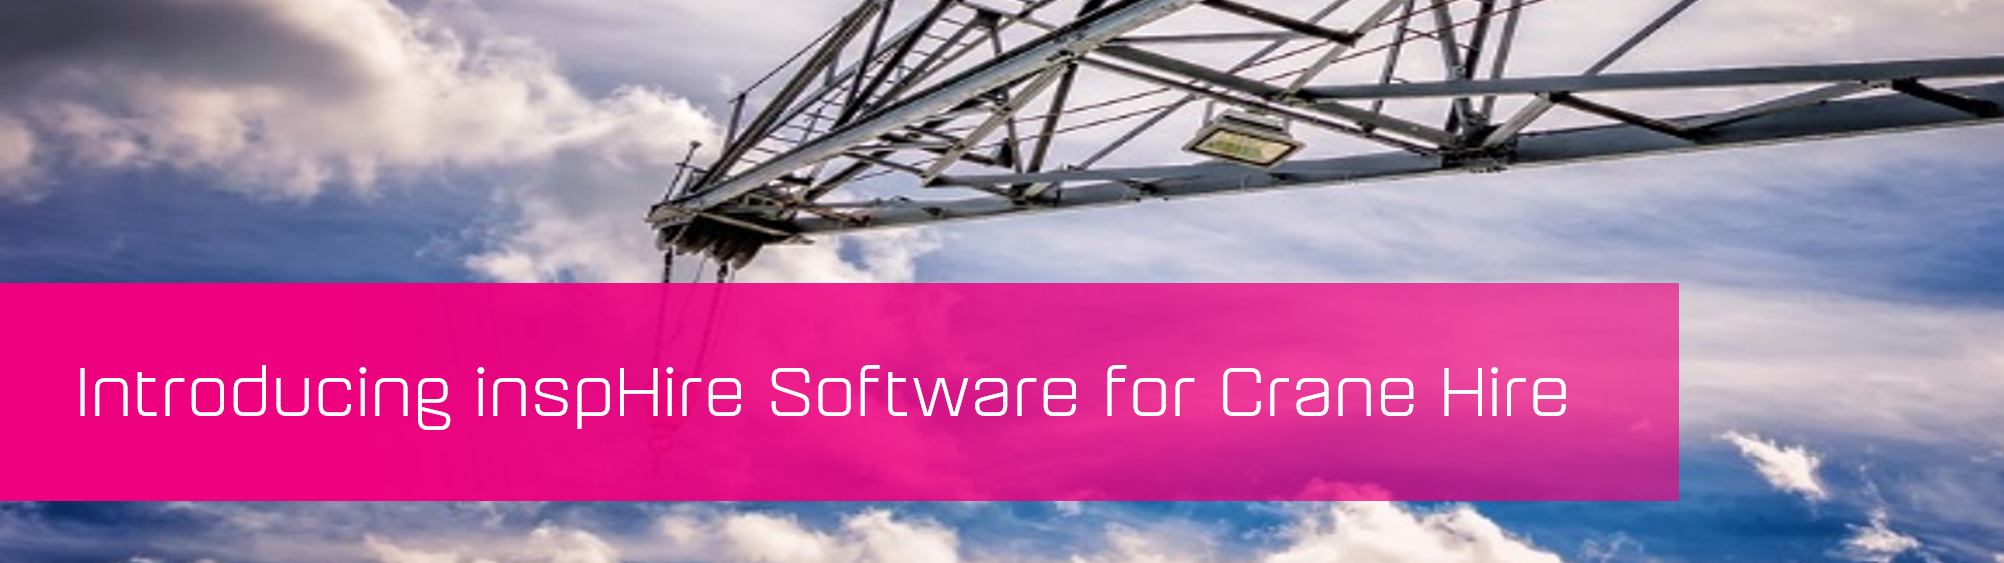 KCS SA - Blog - Insphire Software for Crane hire